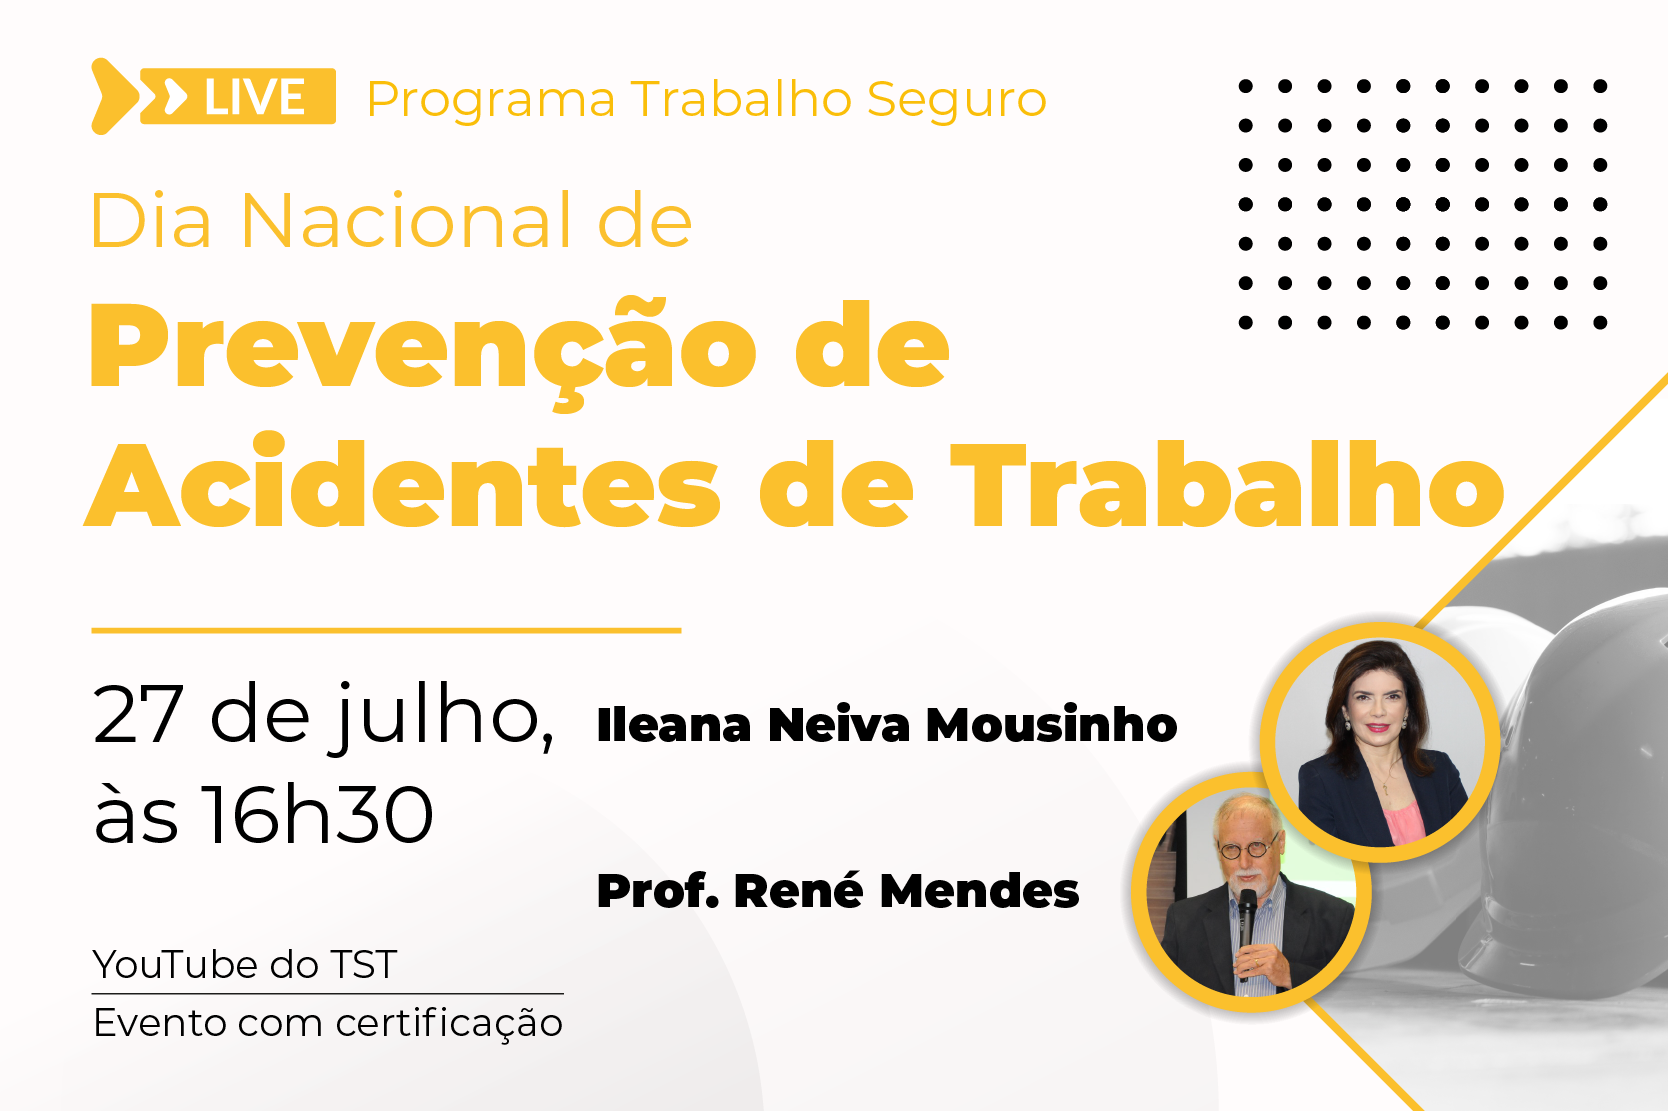 Imagem de divulgação da live, com nomes e fotos dos palestrantes, Ileana Mousinho e prof. René Mende